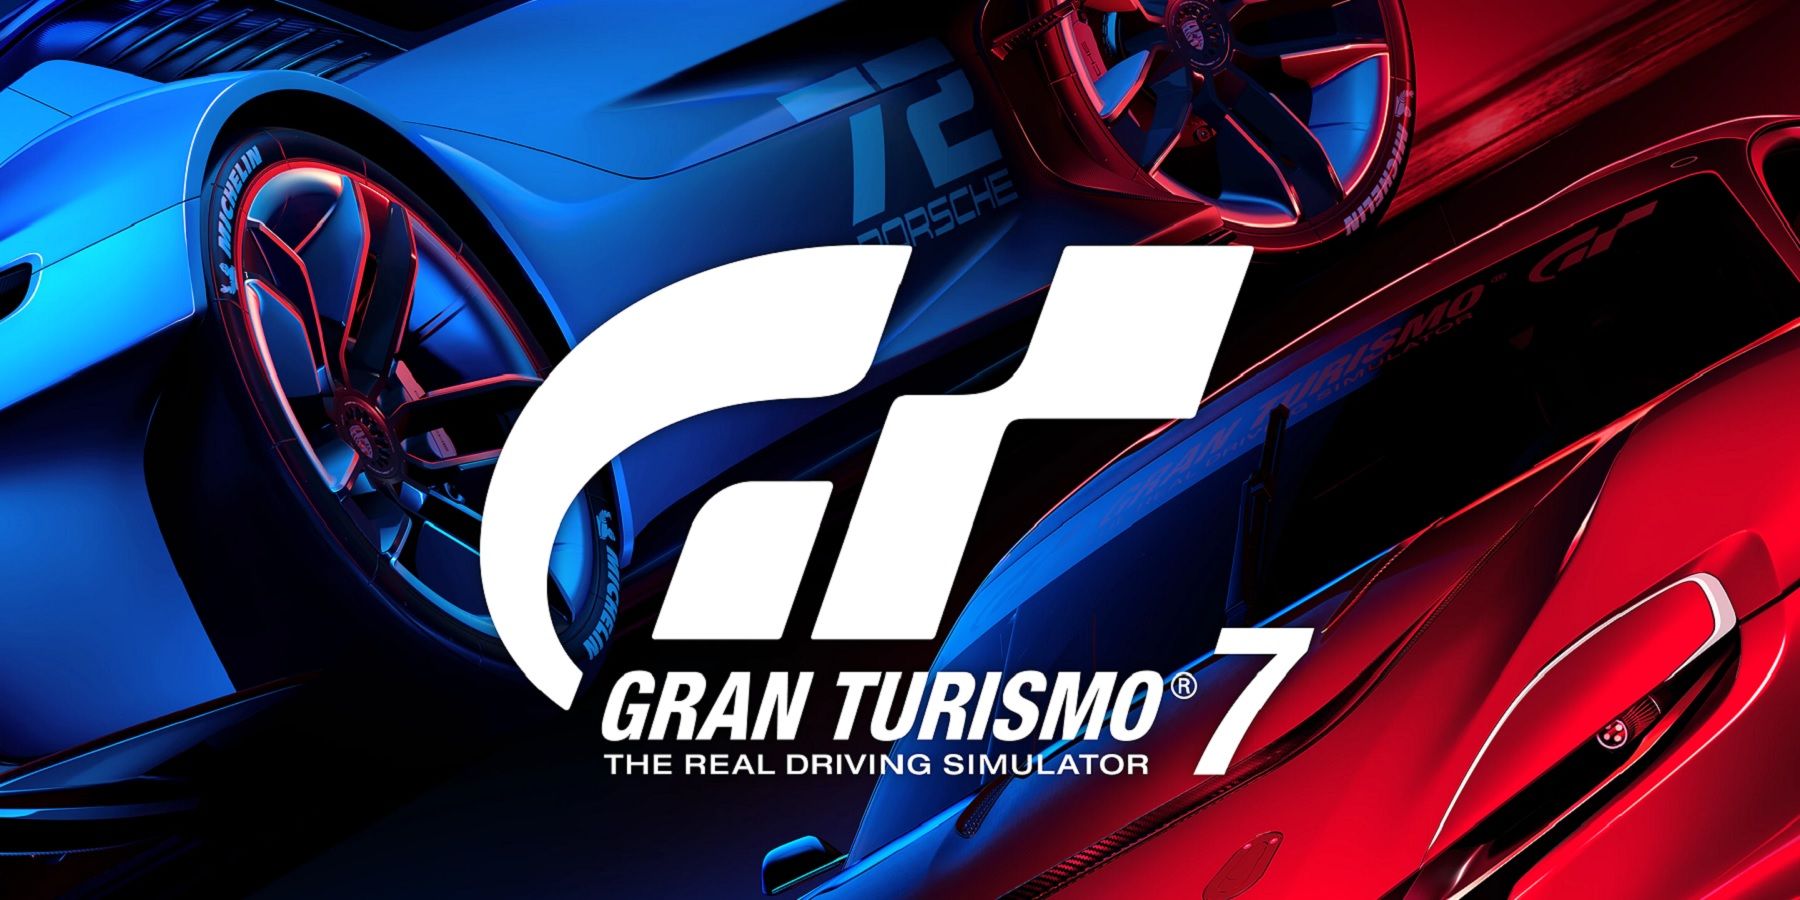 Обновление 1.06 для Gran Turismo 7 добавляет новый контент и устраняет проблемы